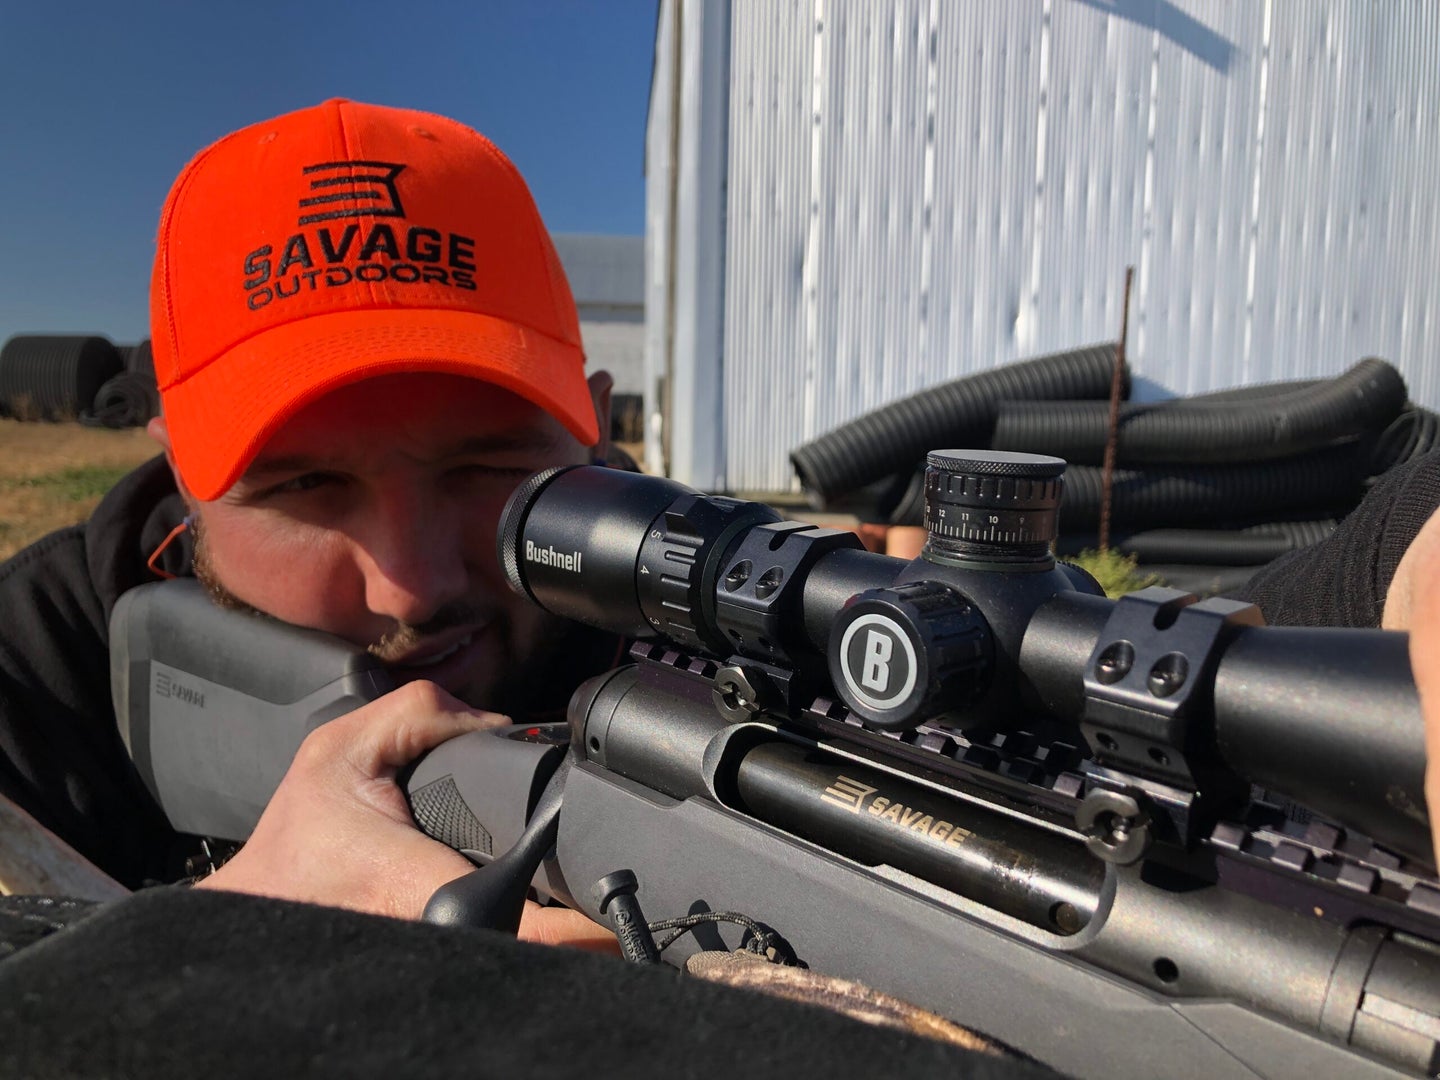 Deer hunter sighting in Savage 220 slug gun in 20-gauge